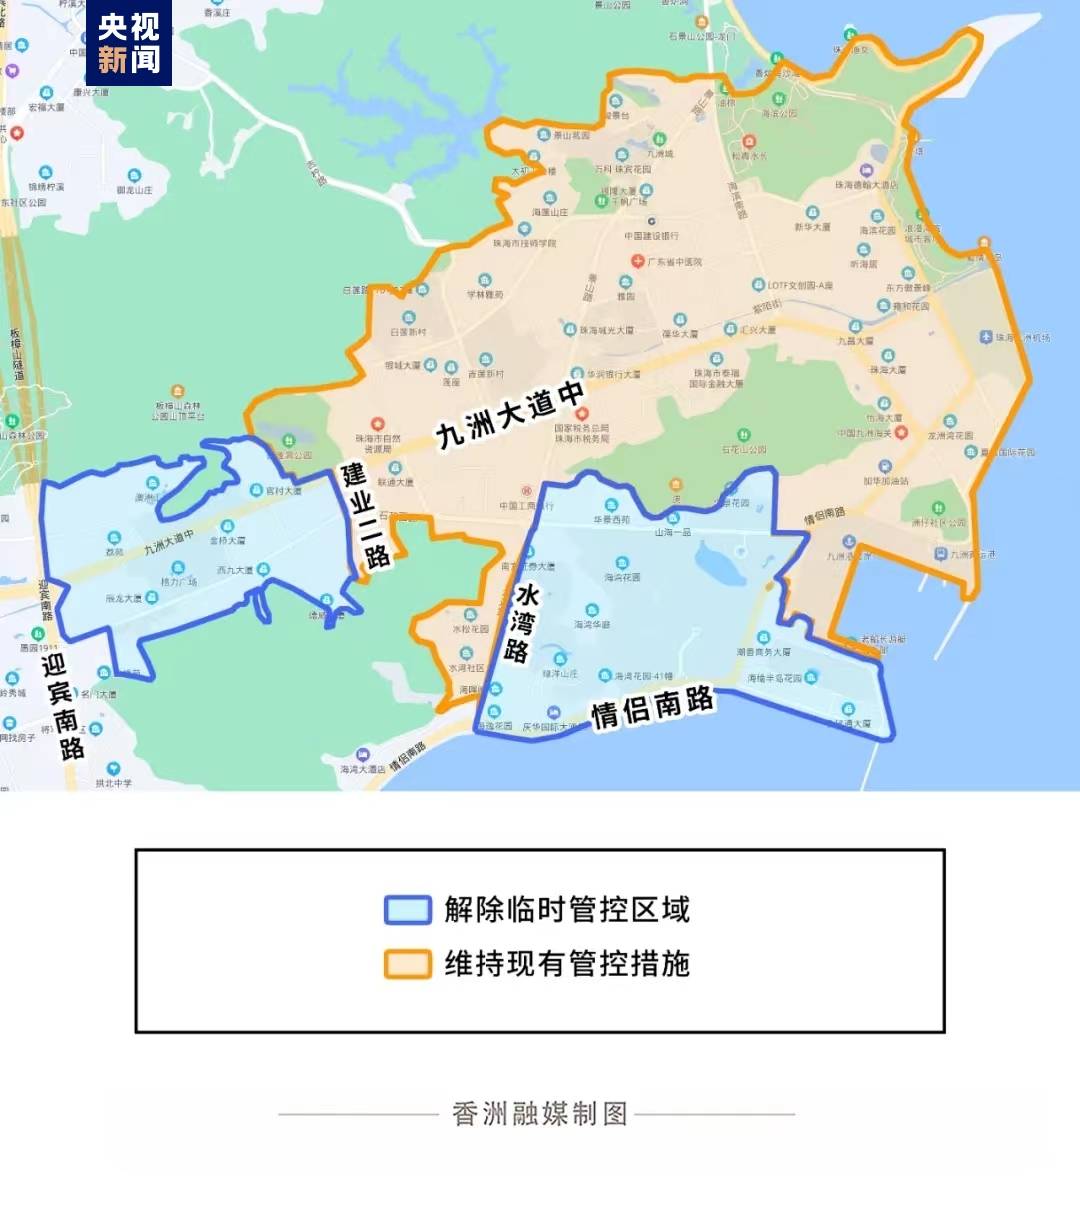 广东珠海香洲区调整区域防控措施,多地降级